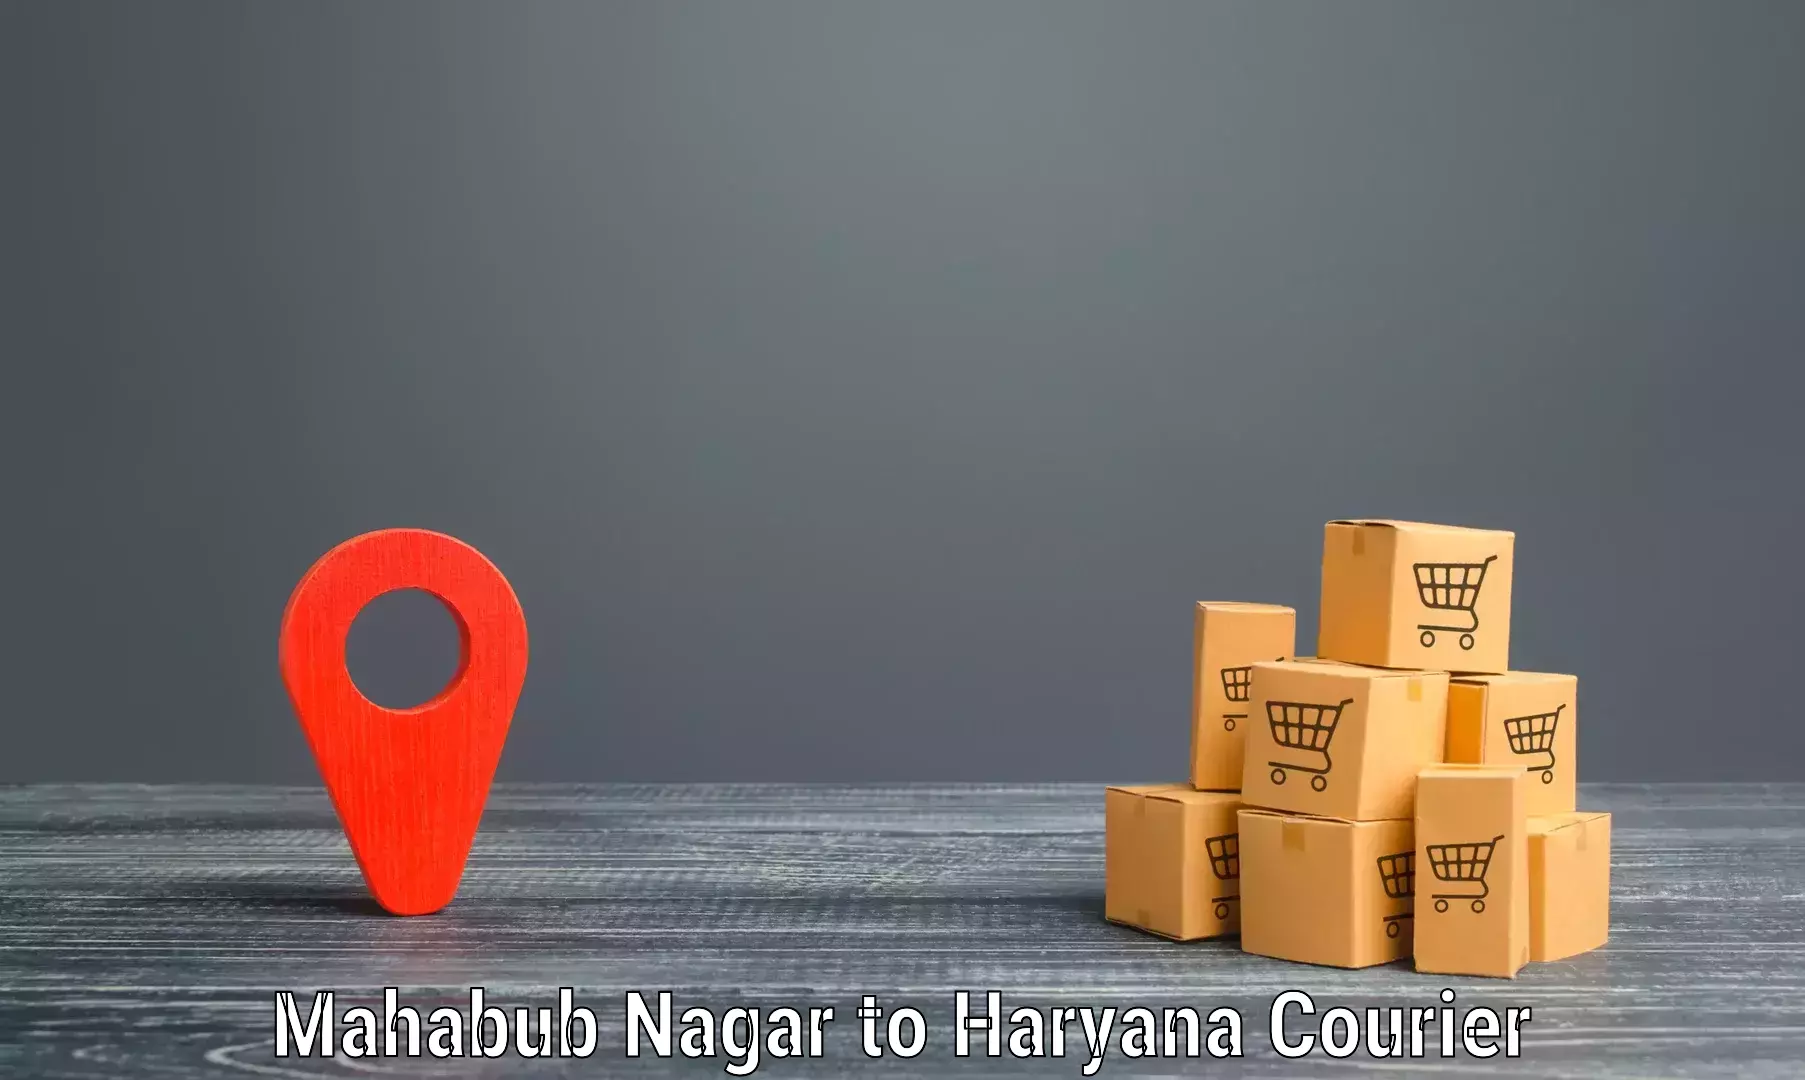 Nationwide courier service Mahabub Nagar to Chaudhary Charan Singh Haryana Agricultural University Hisar